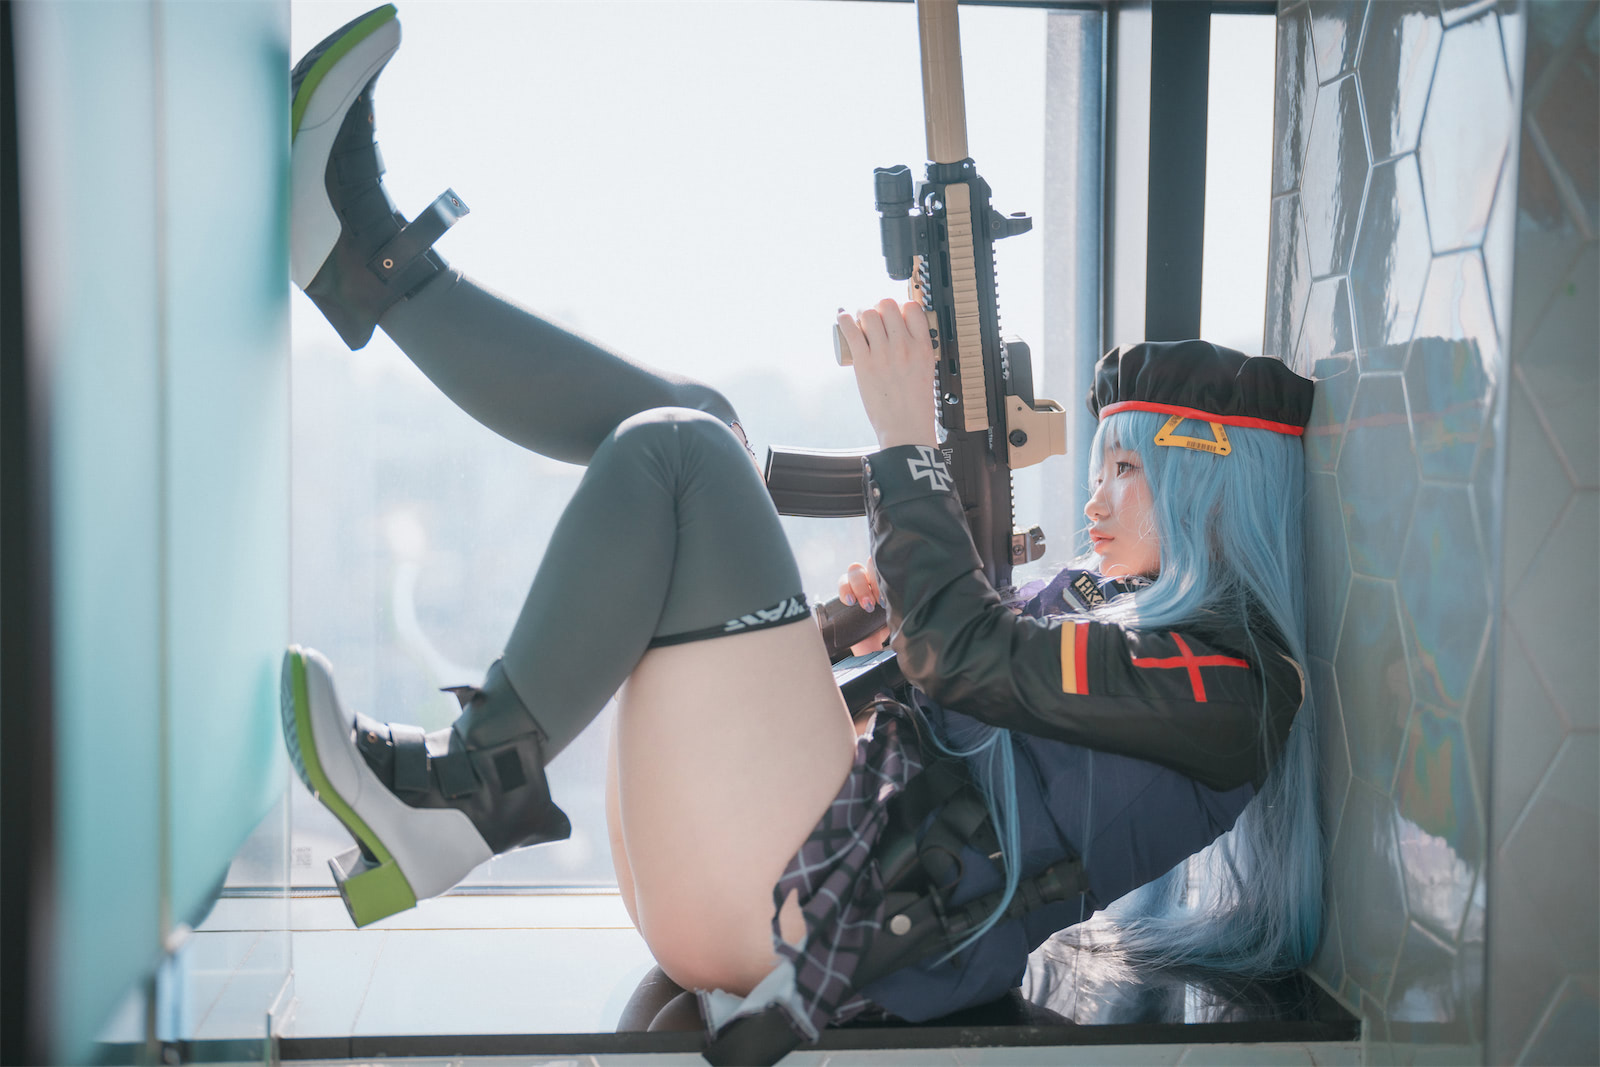 Mimmi 䒚女前线HK4163